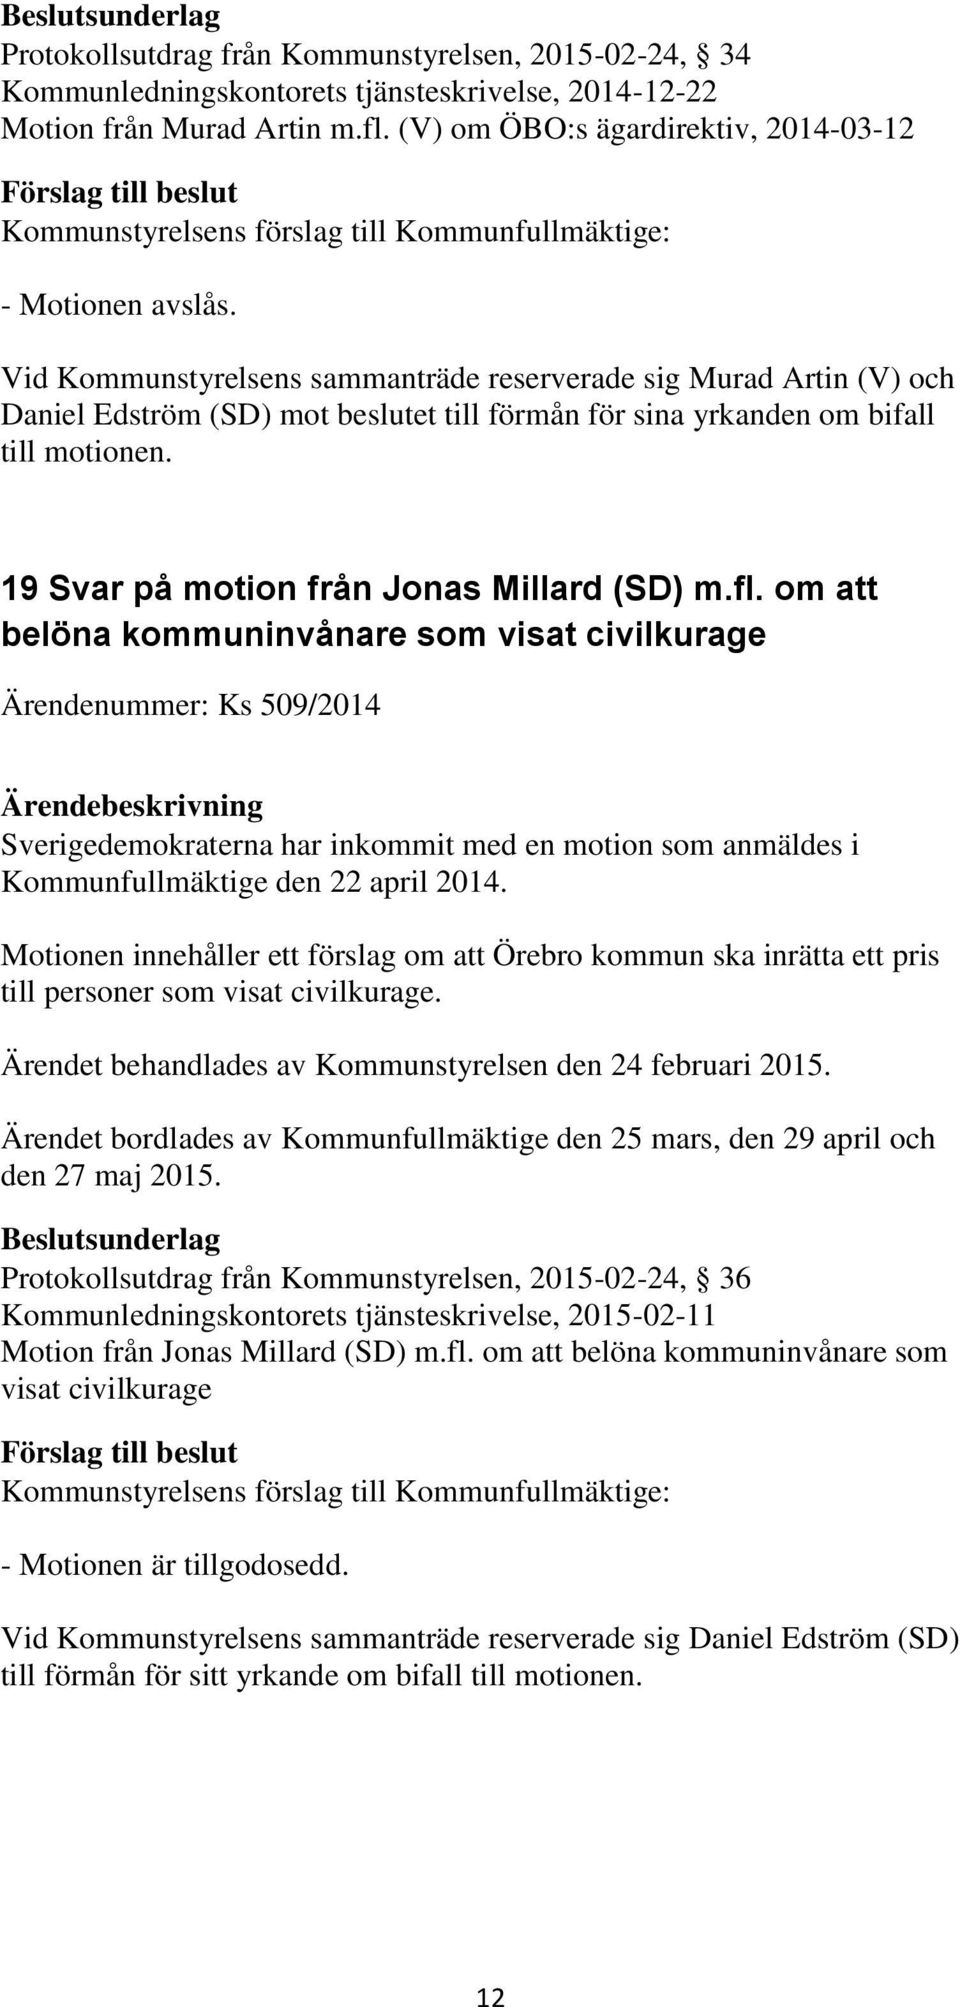 19 Svar på motion från Jonas Millard (SD) m.fl.